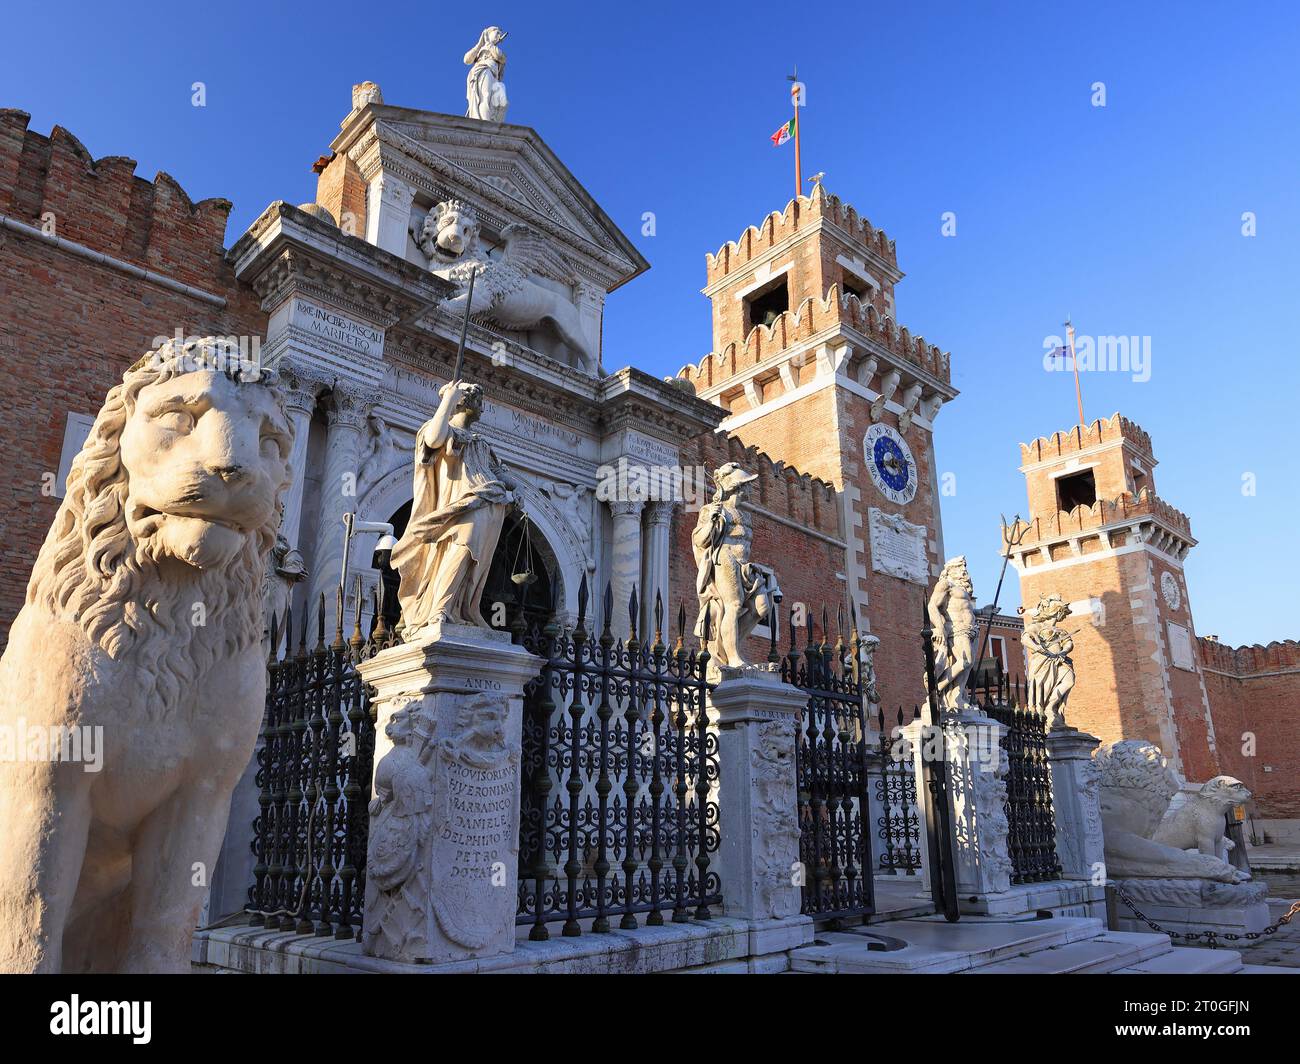 Ingresso all'Arsenale veneziano con la sua guardia permanente di leoni marmorei. L'Arsenale veneziano è un complesso di ex cantieri navali e armerie Foto Stock